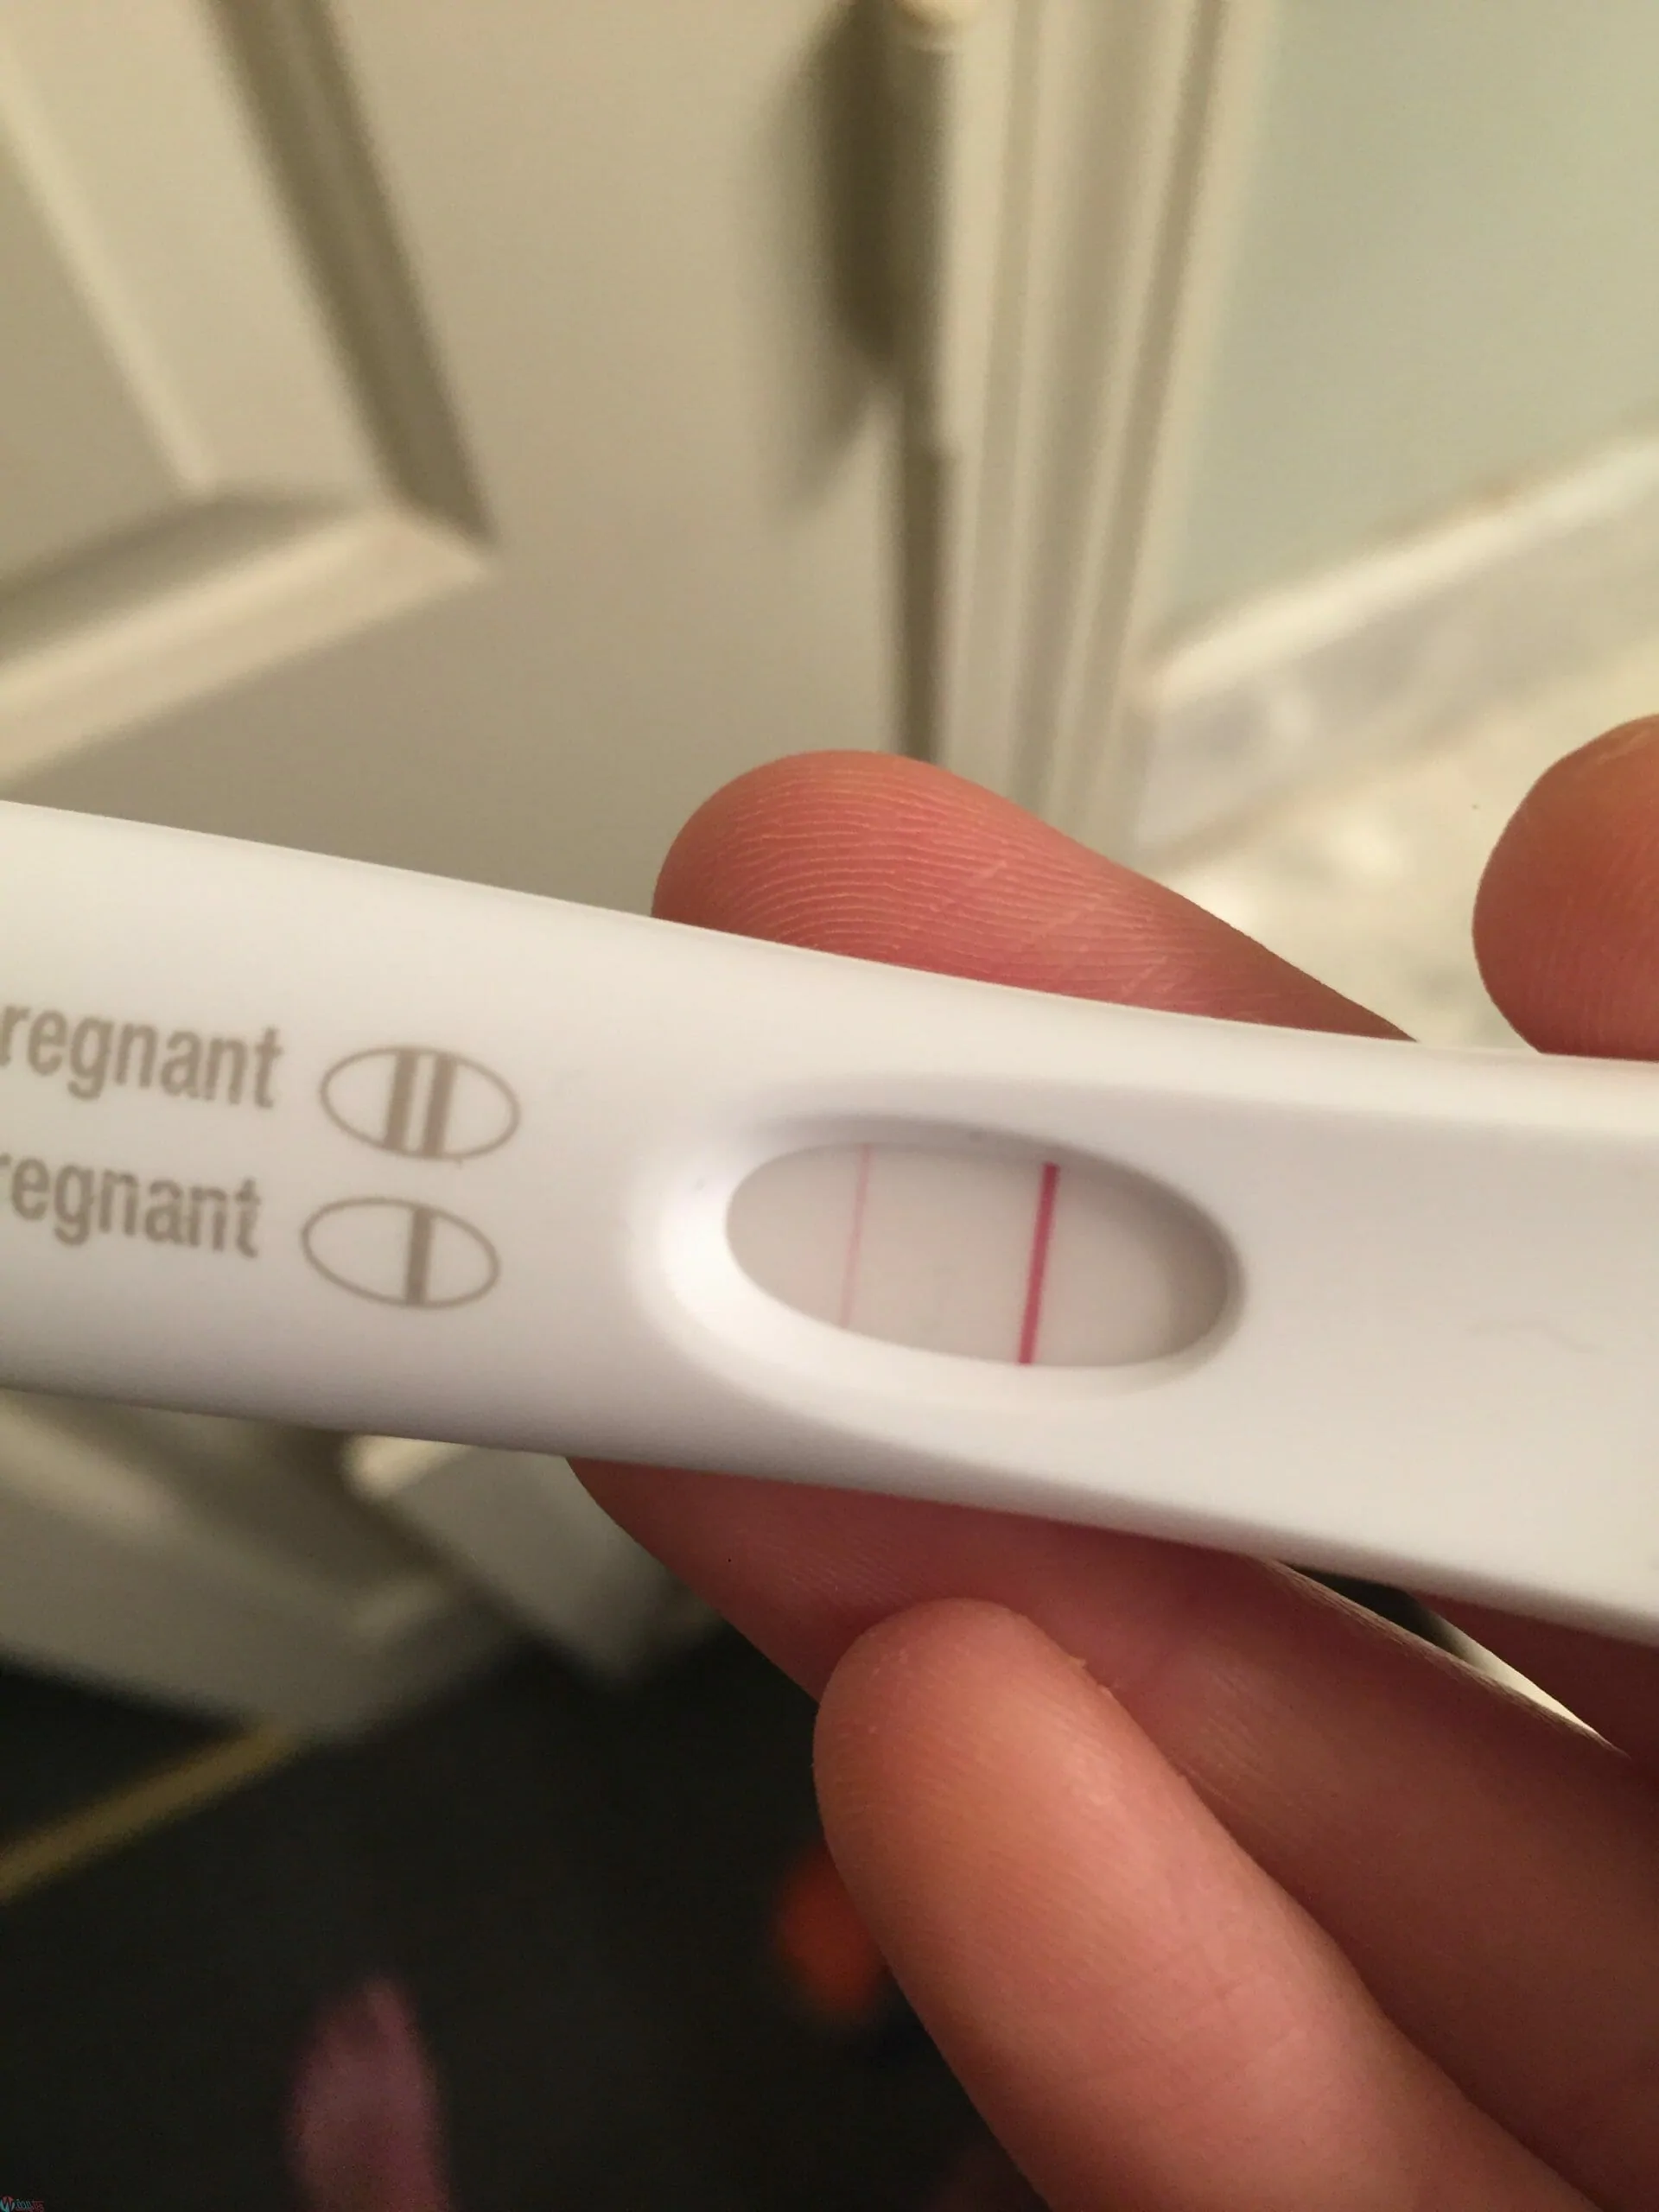 ظهور خط باهت في اختبار الحمل و الفرق بين الايجابي والسلبي